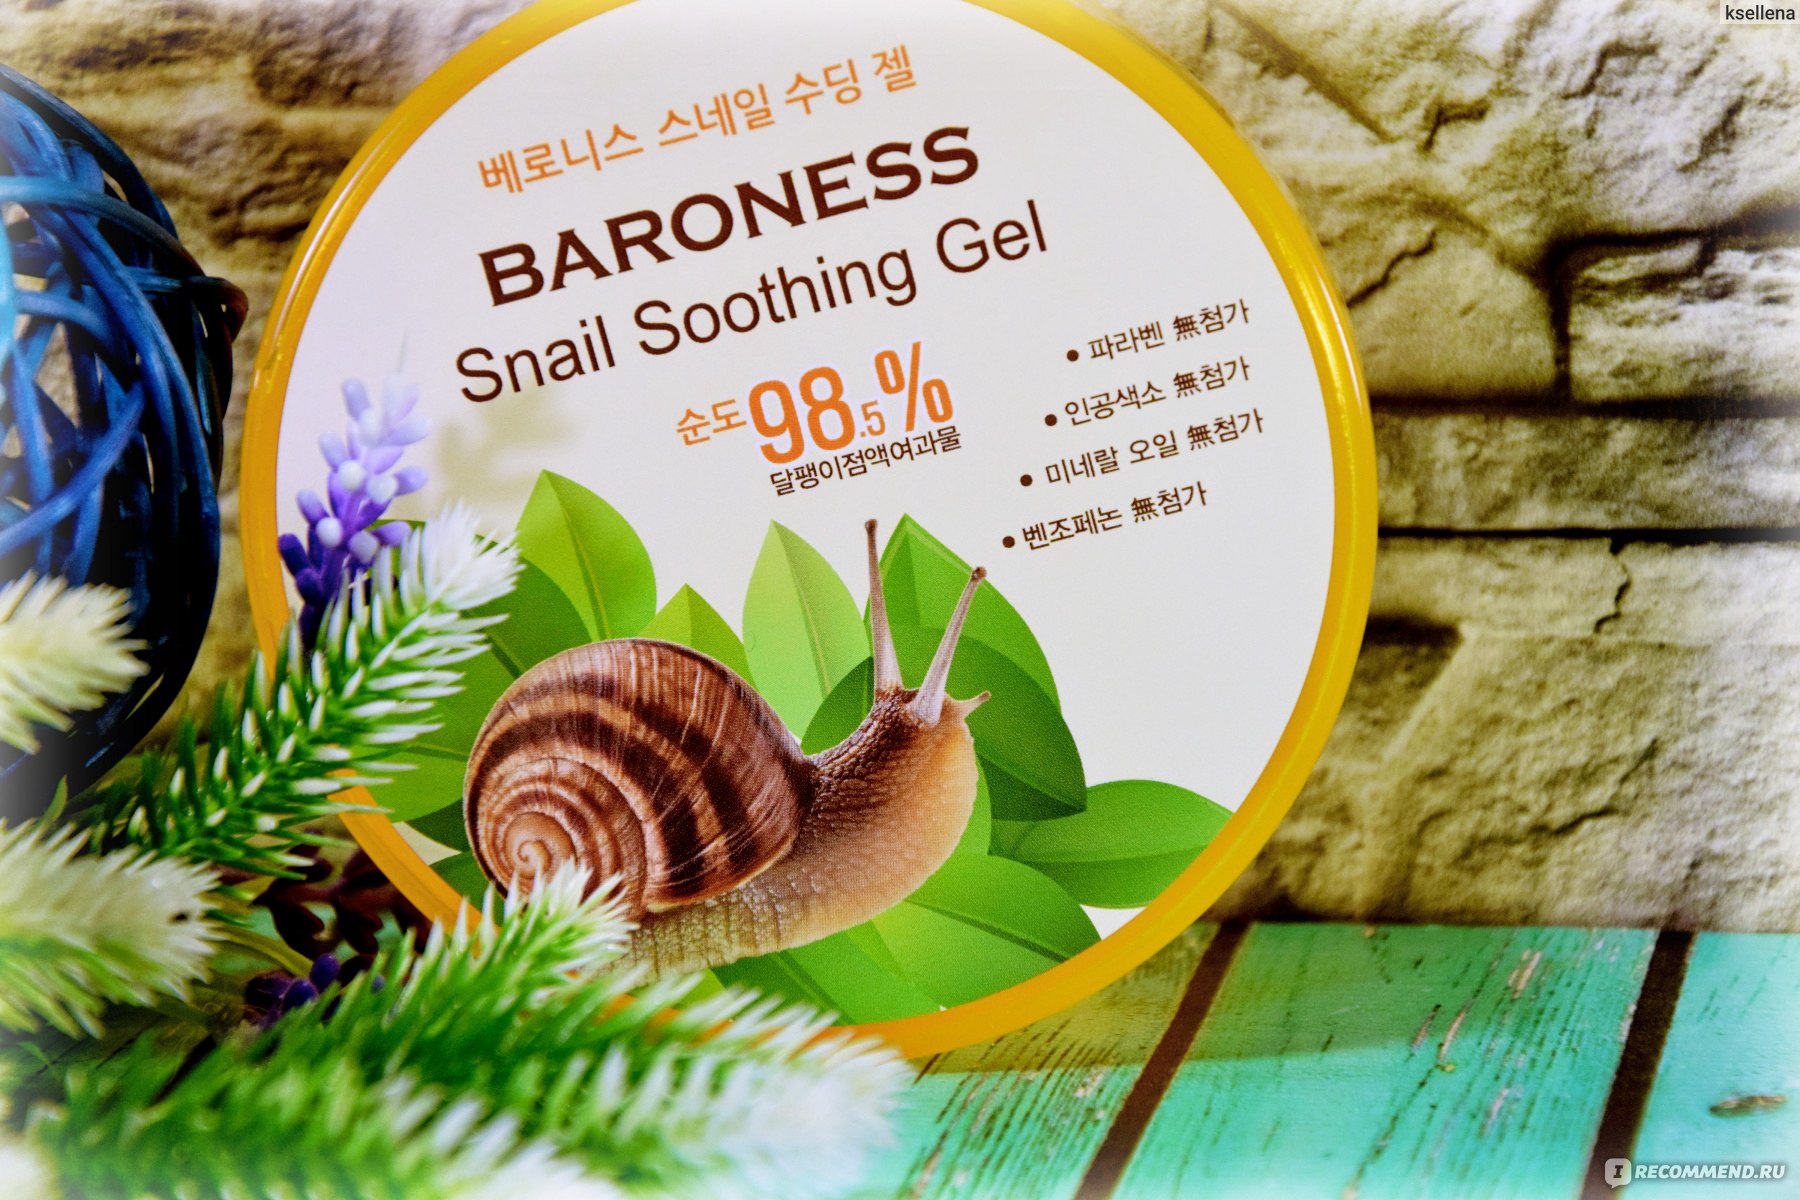 Snail soothing gel. Baroness Snail Soothing Gel. Многофункциональный гель с экстрактом улитки FOODAHOLIC Snail Soothing Gel 95%. [J:on] гель универсальный улитка face & body Snail Soothing Gel 98%, 200 мл. Snail solution Soothing Mousse.